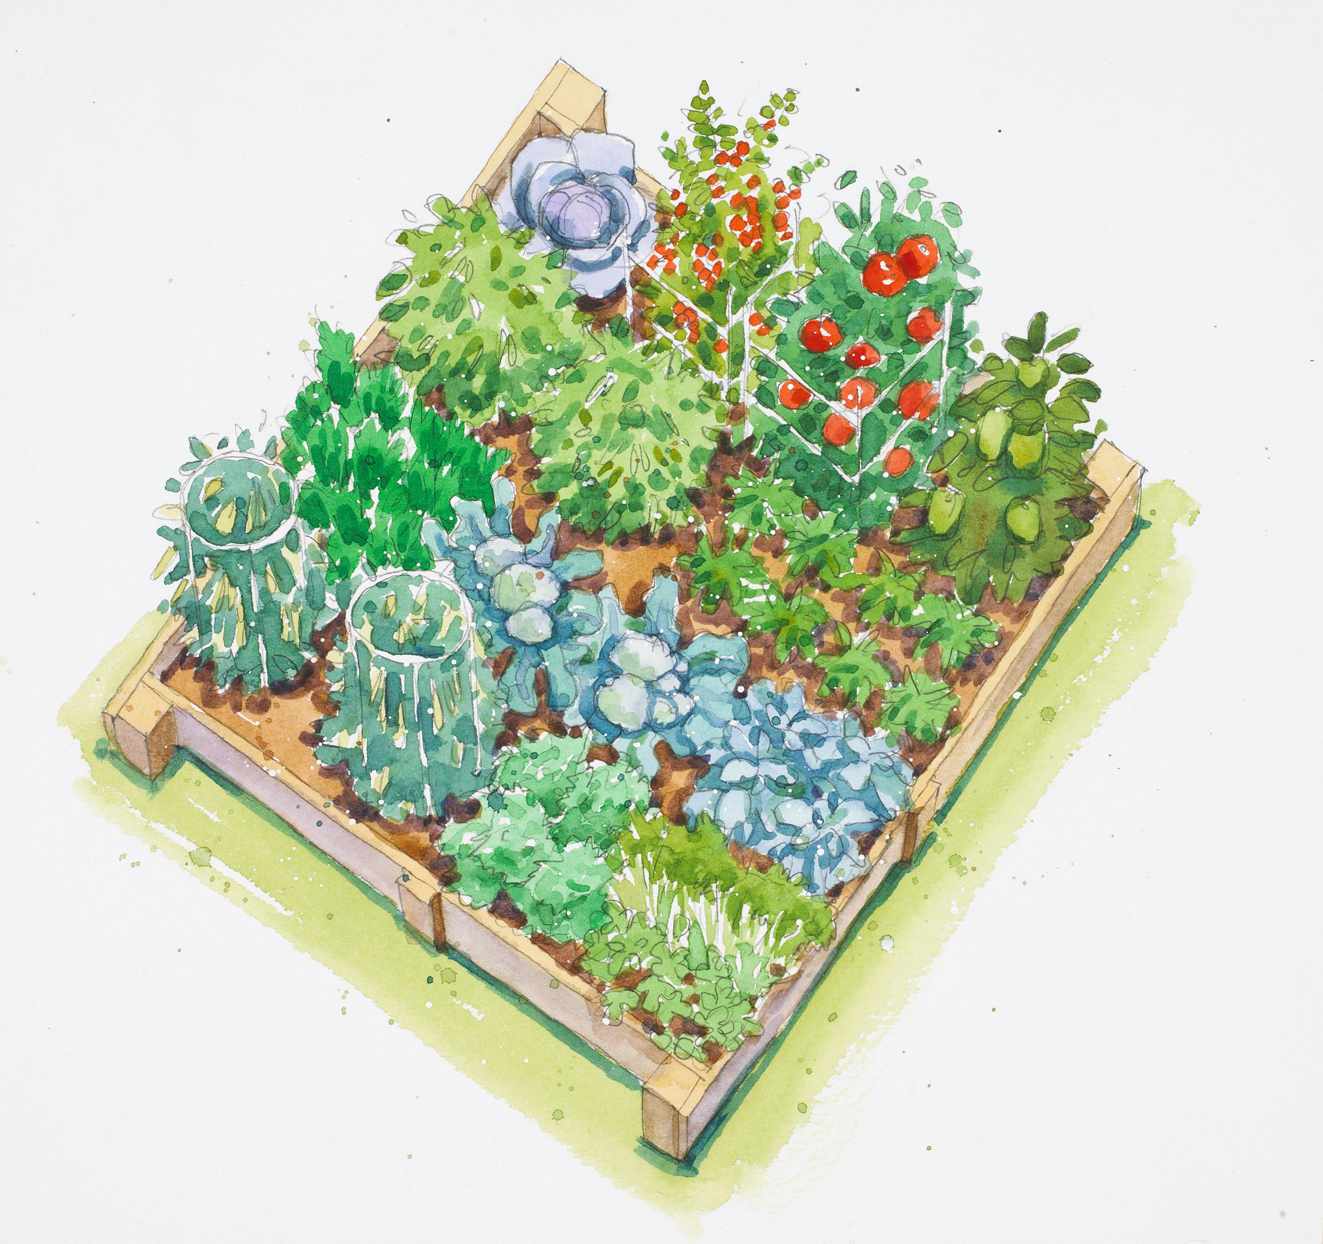 fall-harvest vegetable garden plan illustration